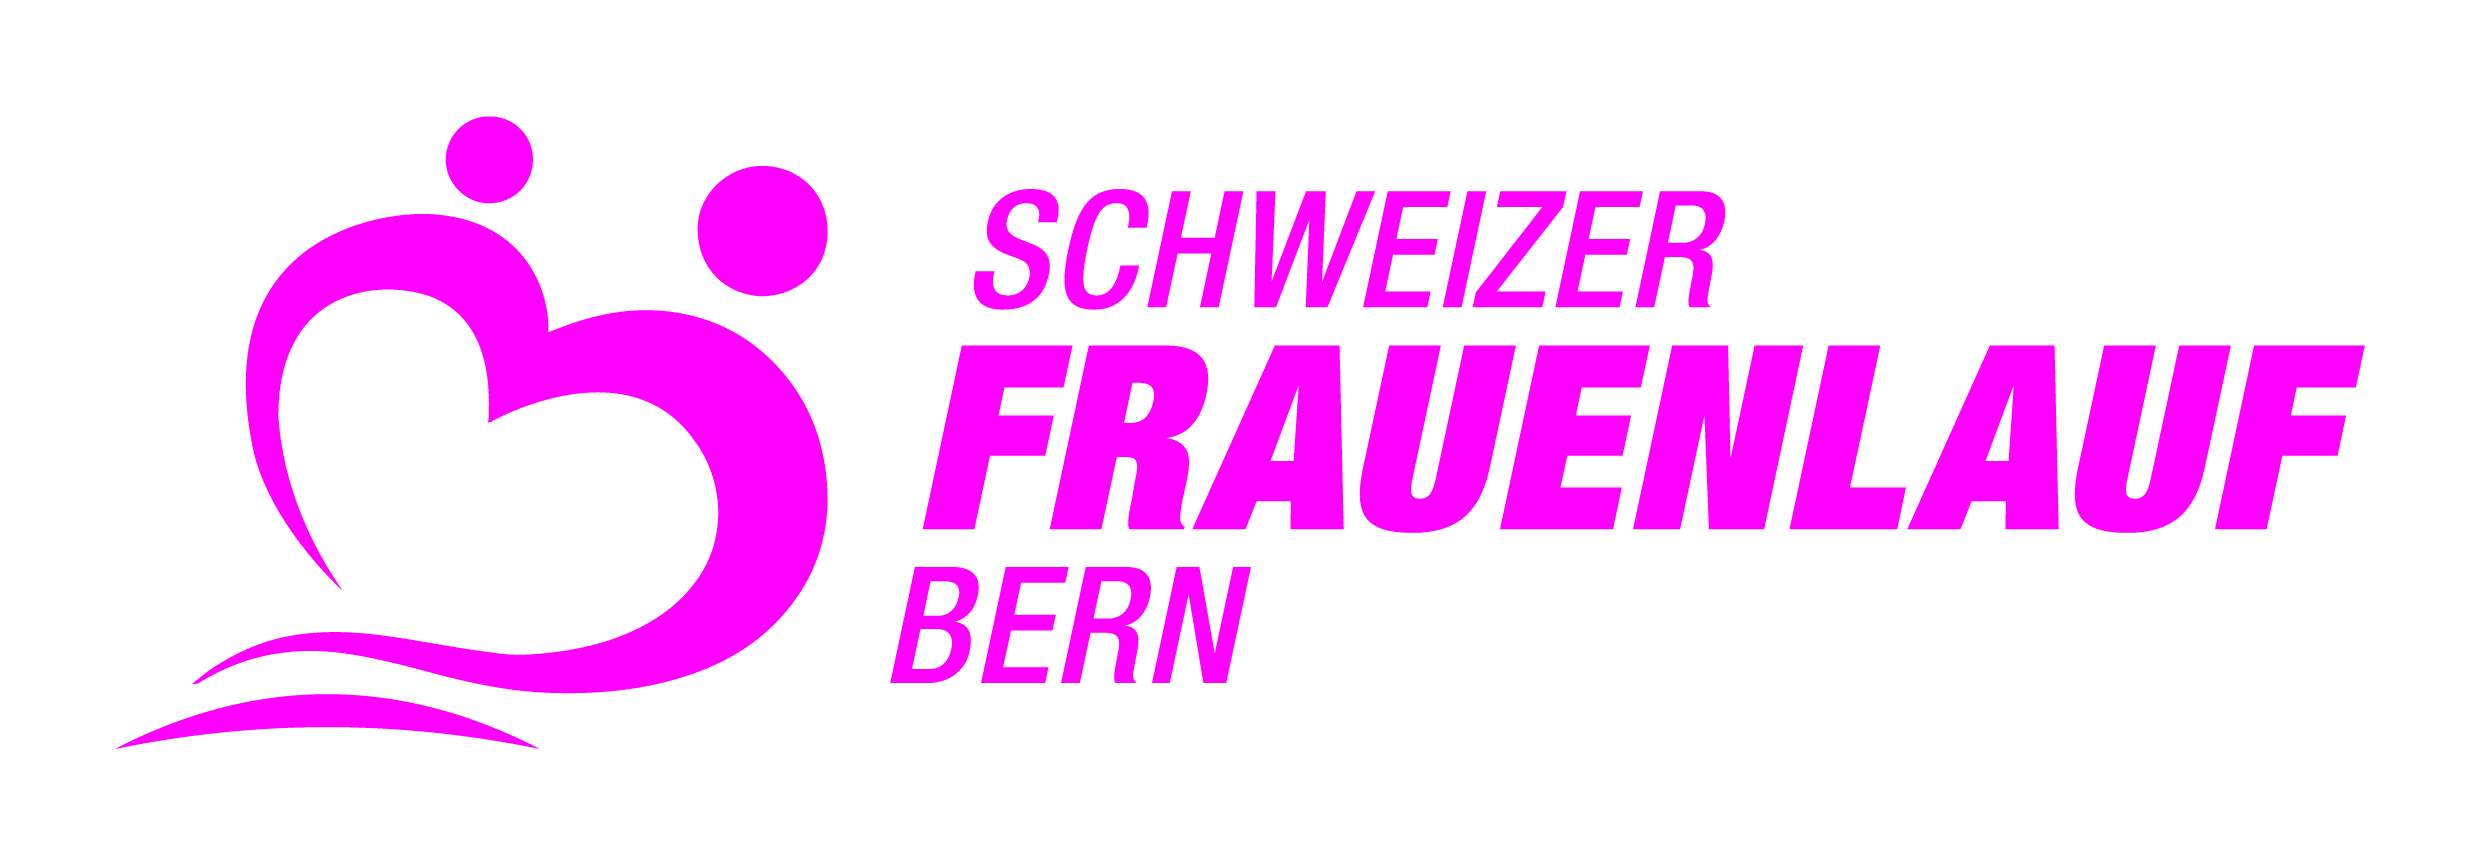 35. Schweizer Frauenlauf Bern